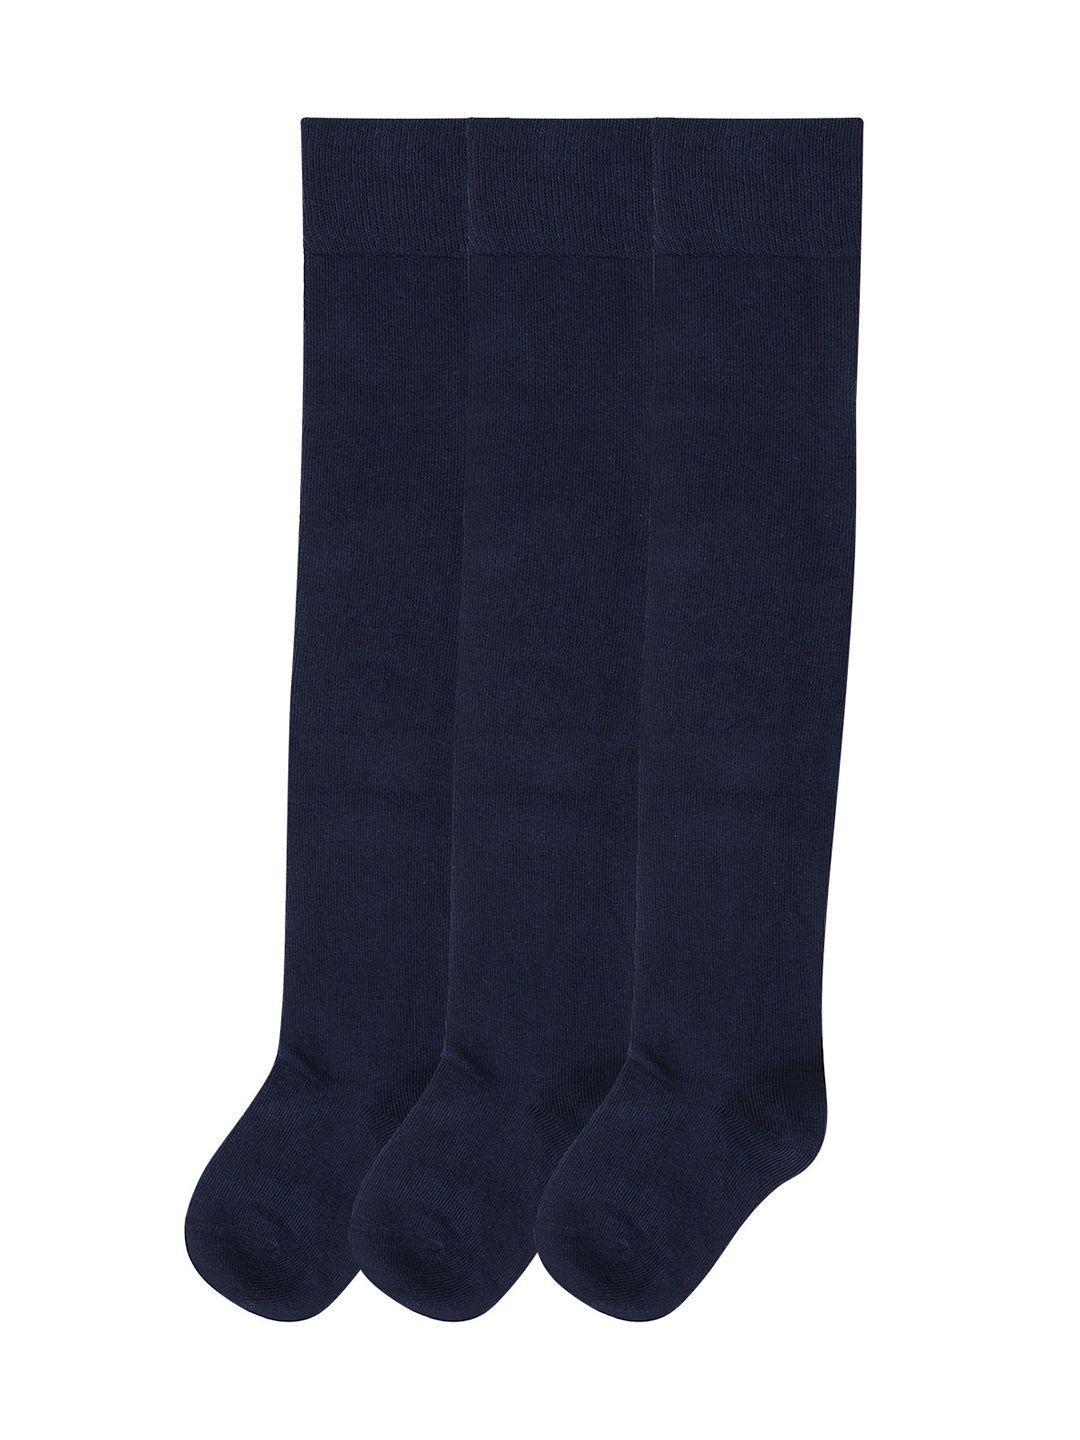 bonjour-girls-pack-of-3-navy-blue-knee-high-stockings